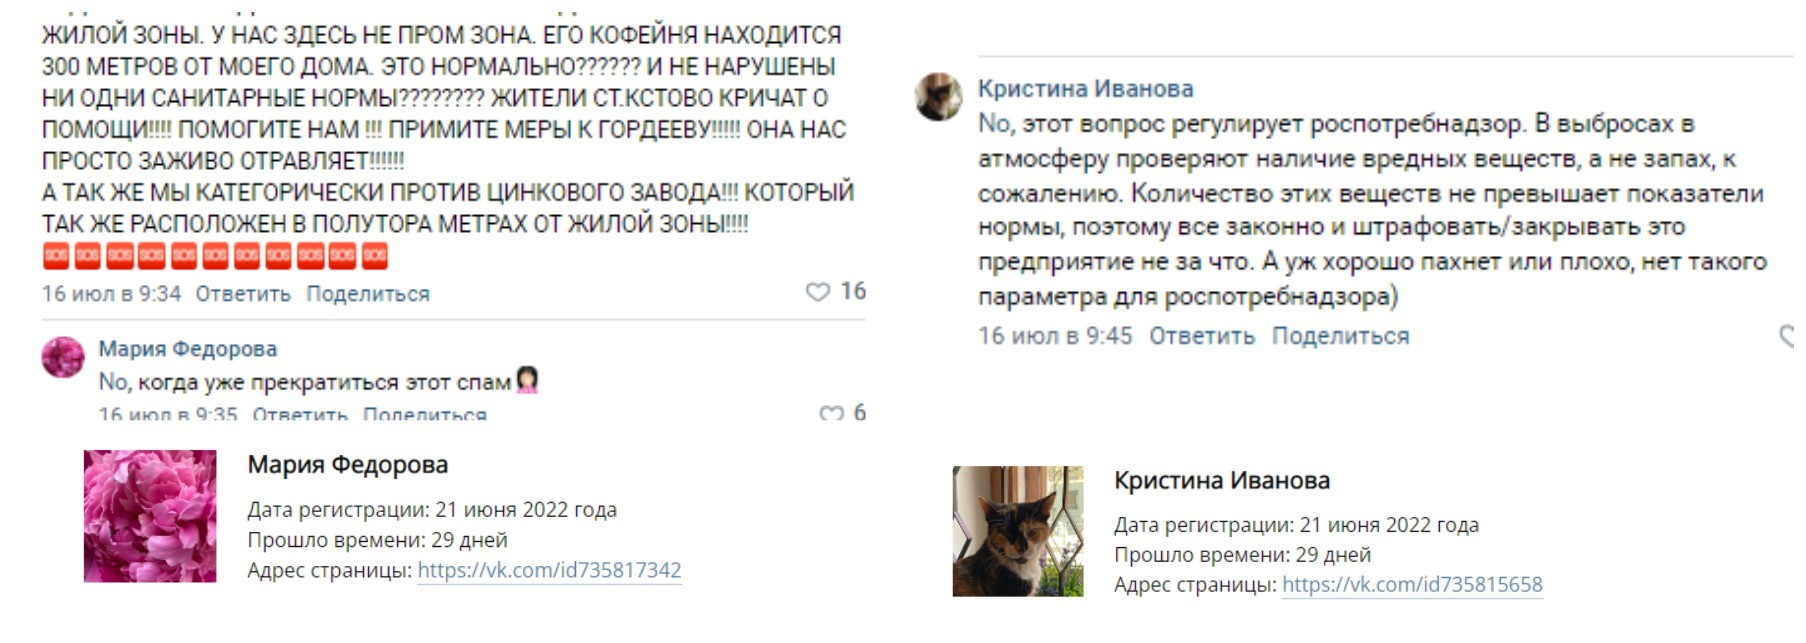 Комментарии на странице губернатора во «ВКонтакте»